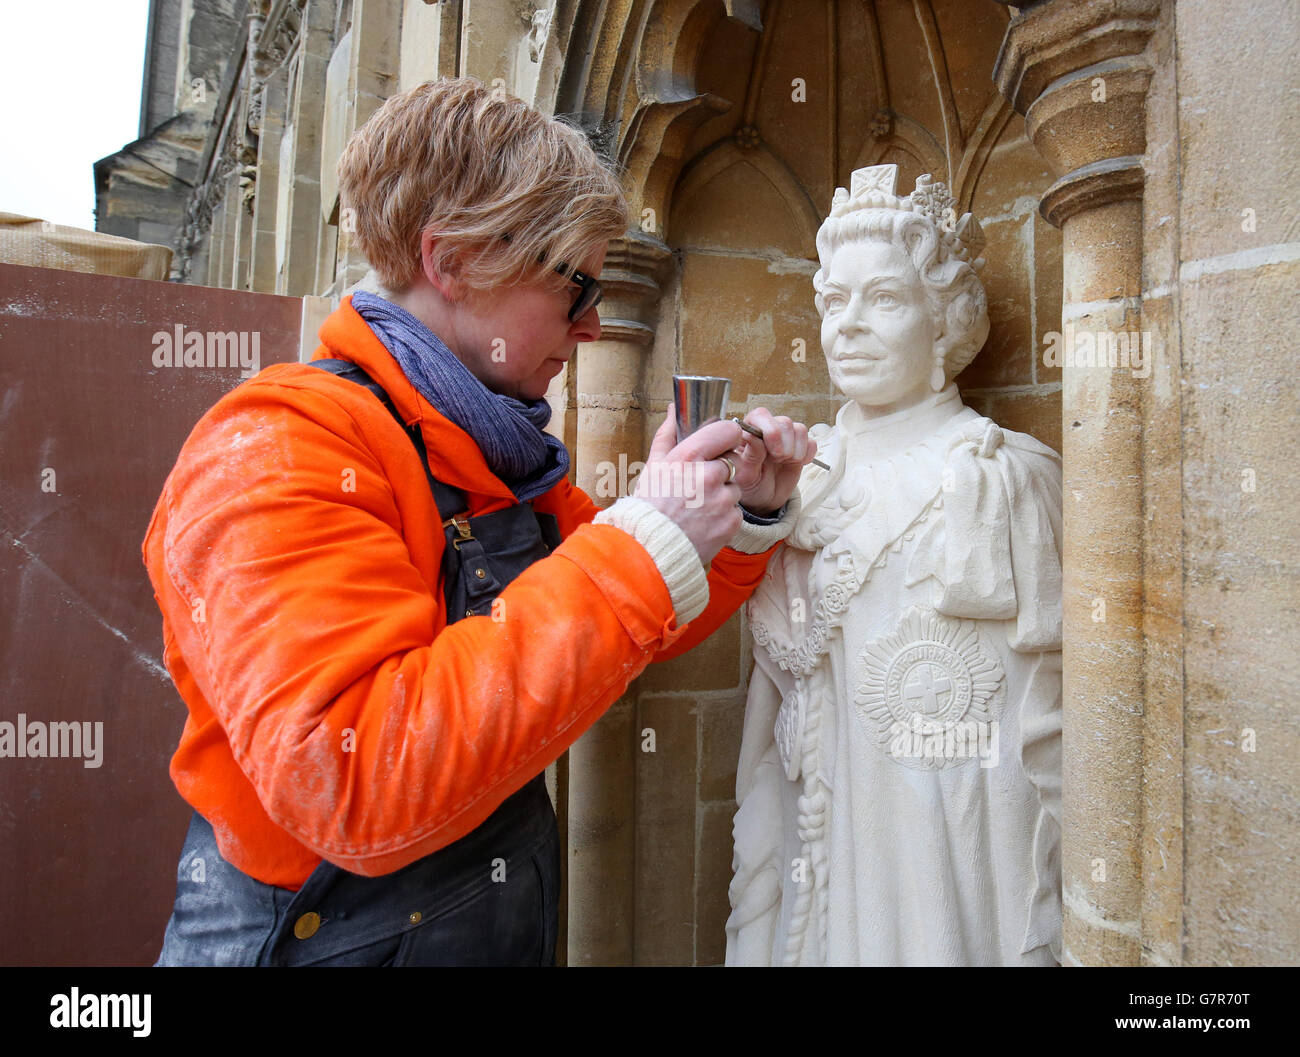 Lo scultore architettonico Nina Bilbey mette il tocco finale alle sue statue della Regina Elisabetta II e del Duca di Edimburgo alla Cattedrale di Canterbury in Kent a come segno del giubileo dei diamanti della Regina. Foto Stock